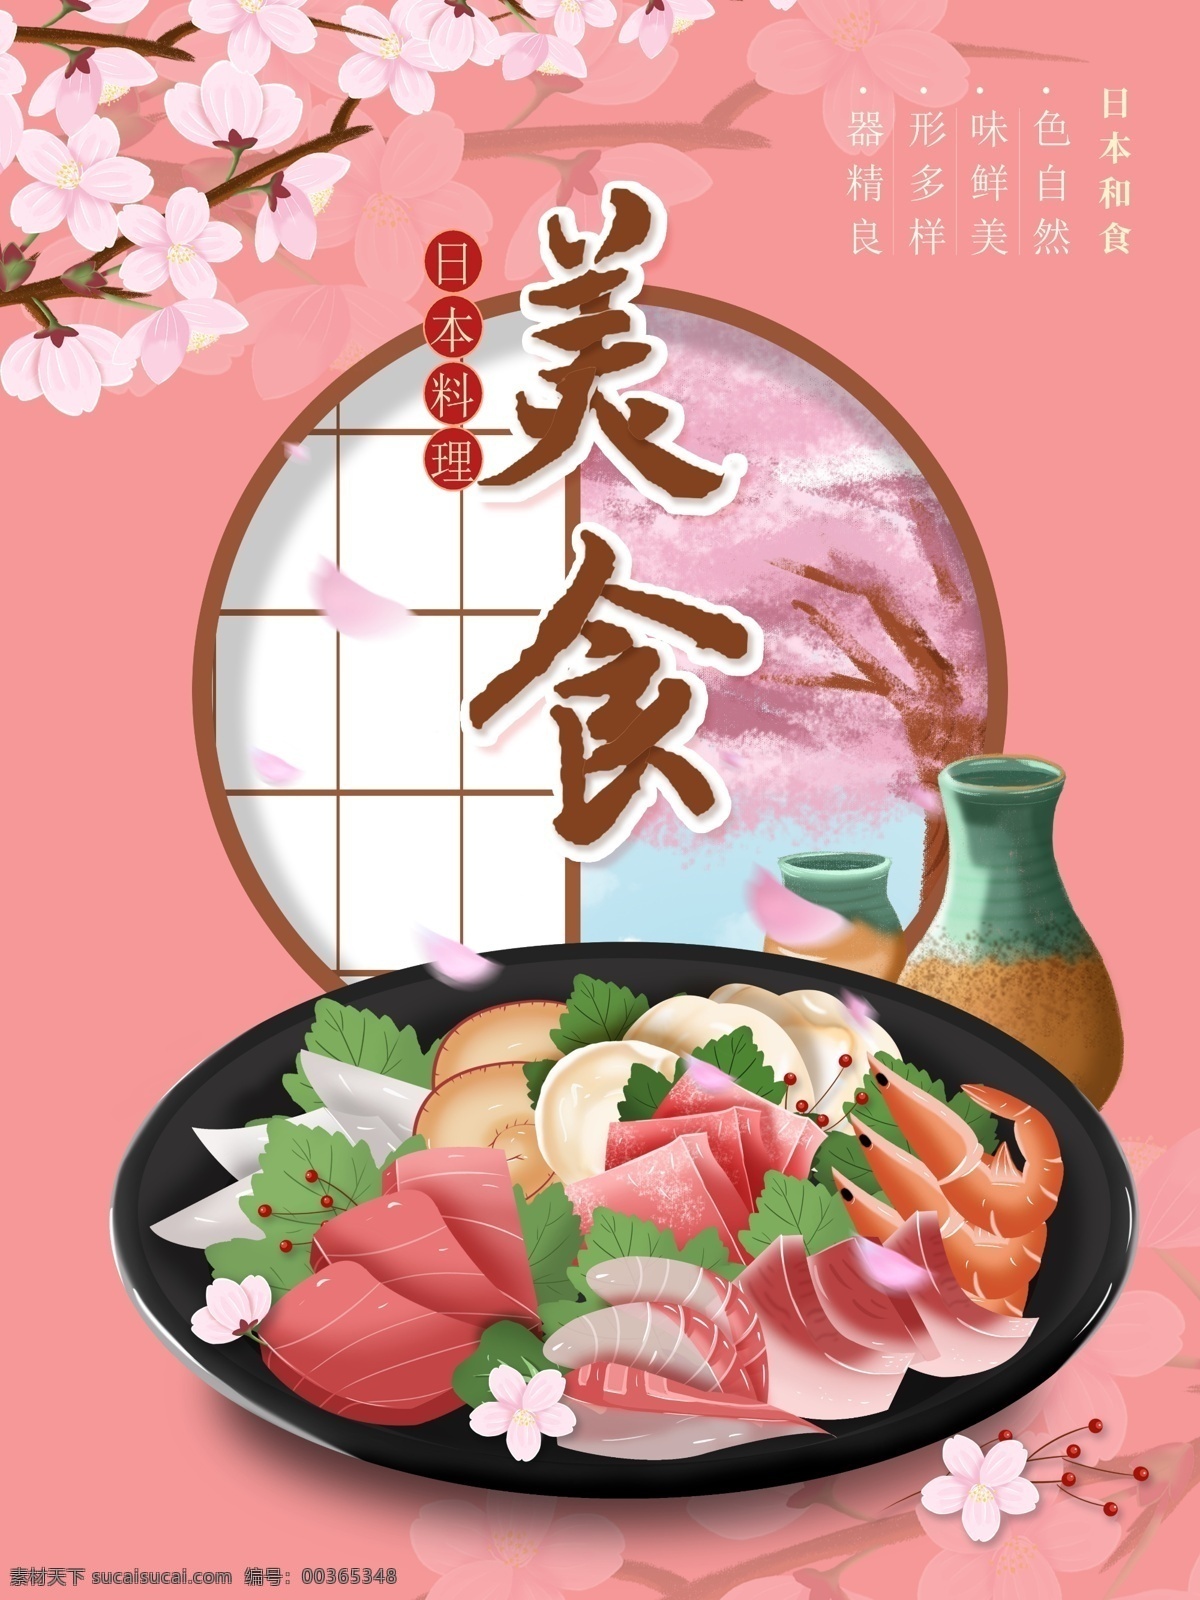 原创 插画 日本料理 美食 海报 原创插画 旅游 日本 料理 樱花 粉色 简约 清酒 海鲜 各色 主题